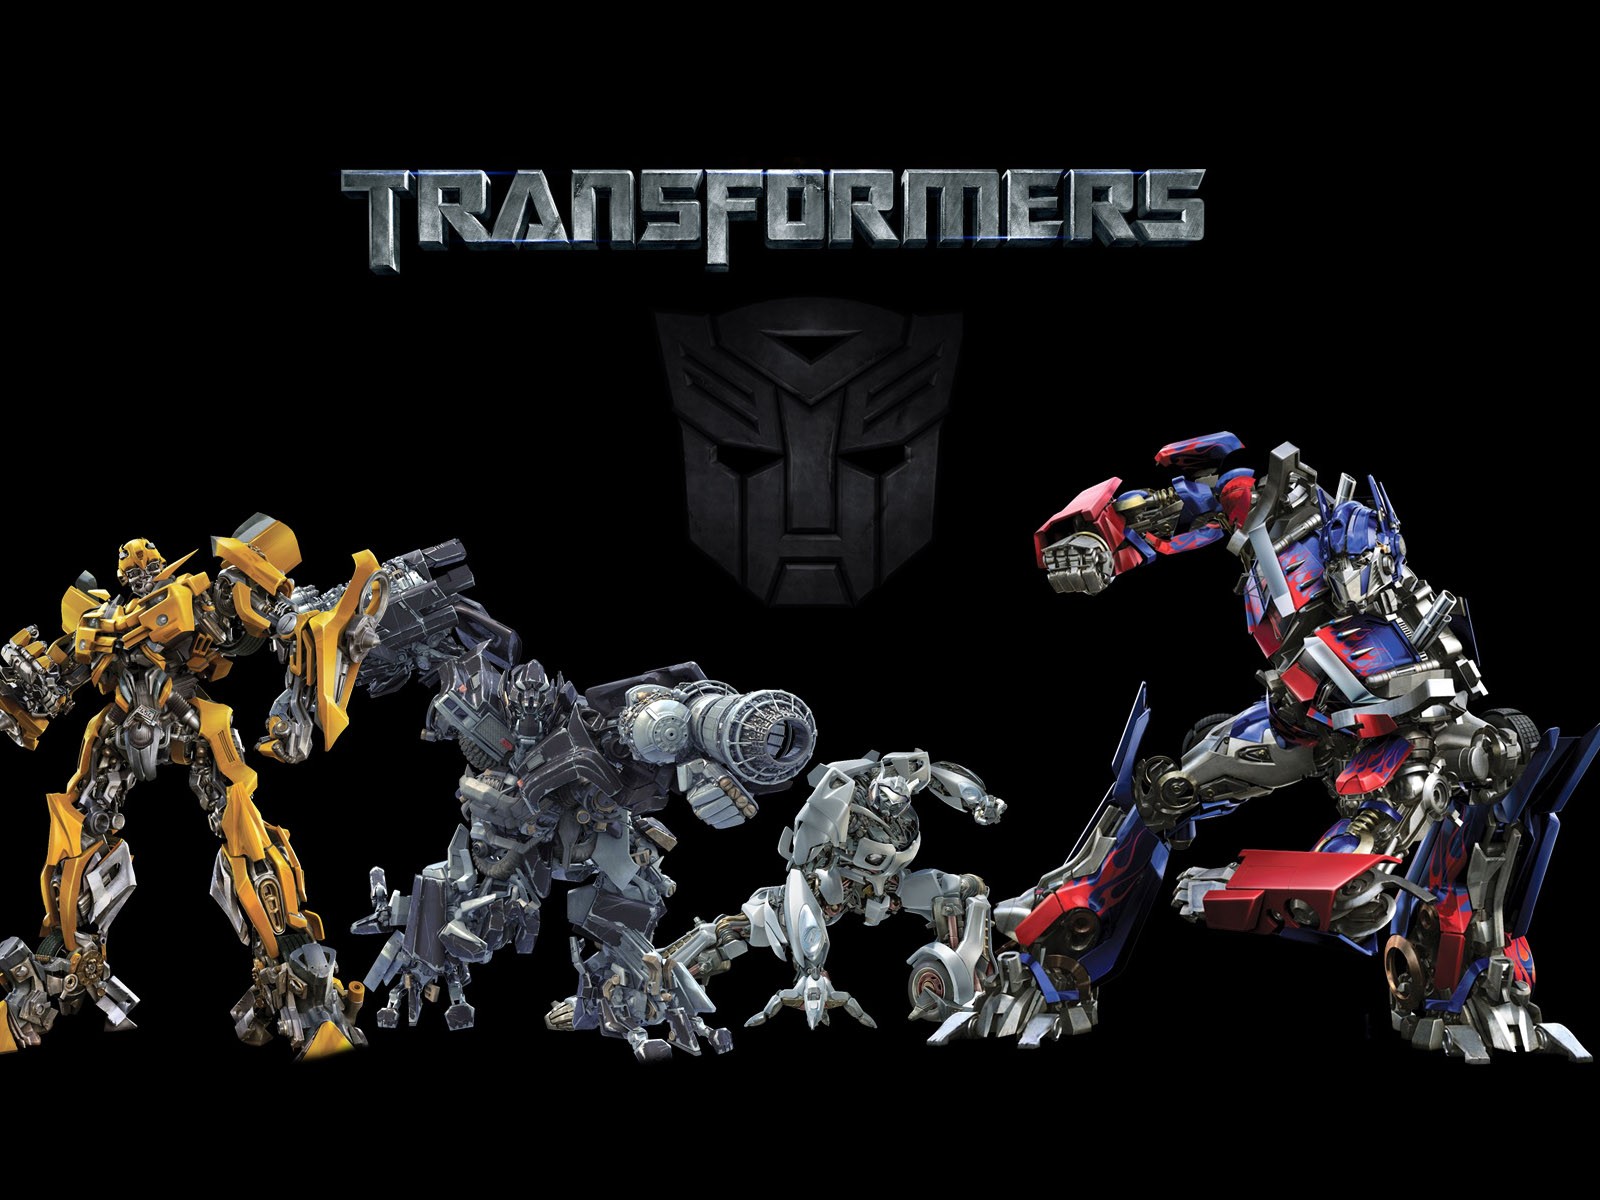 Transformers HD papel tapiz #18 - 1600x1200